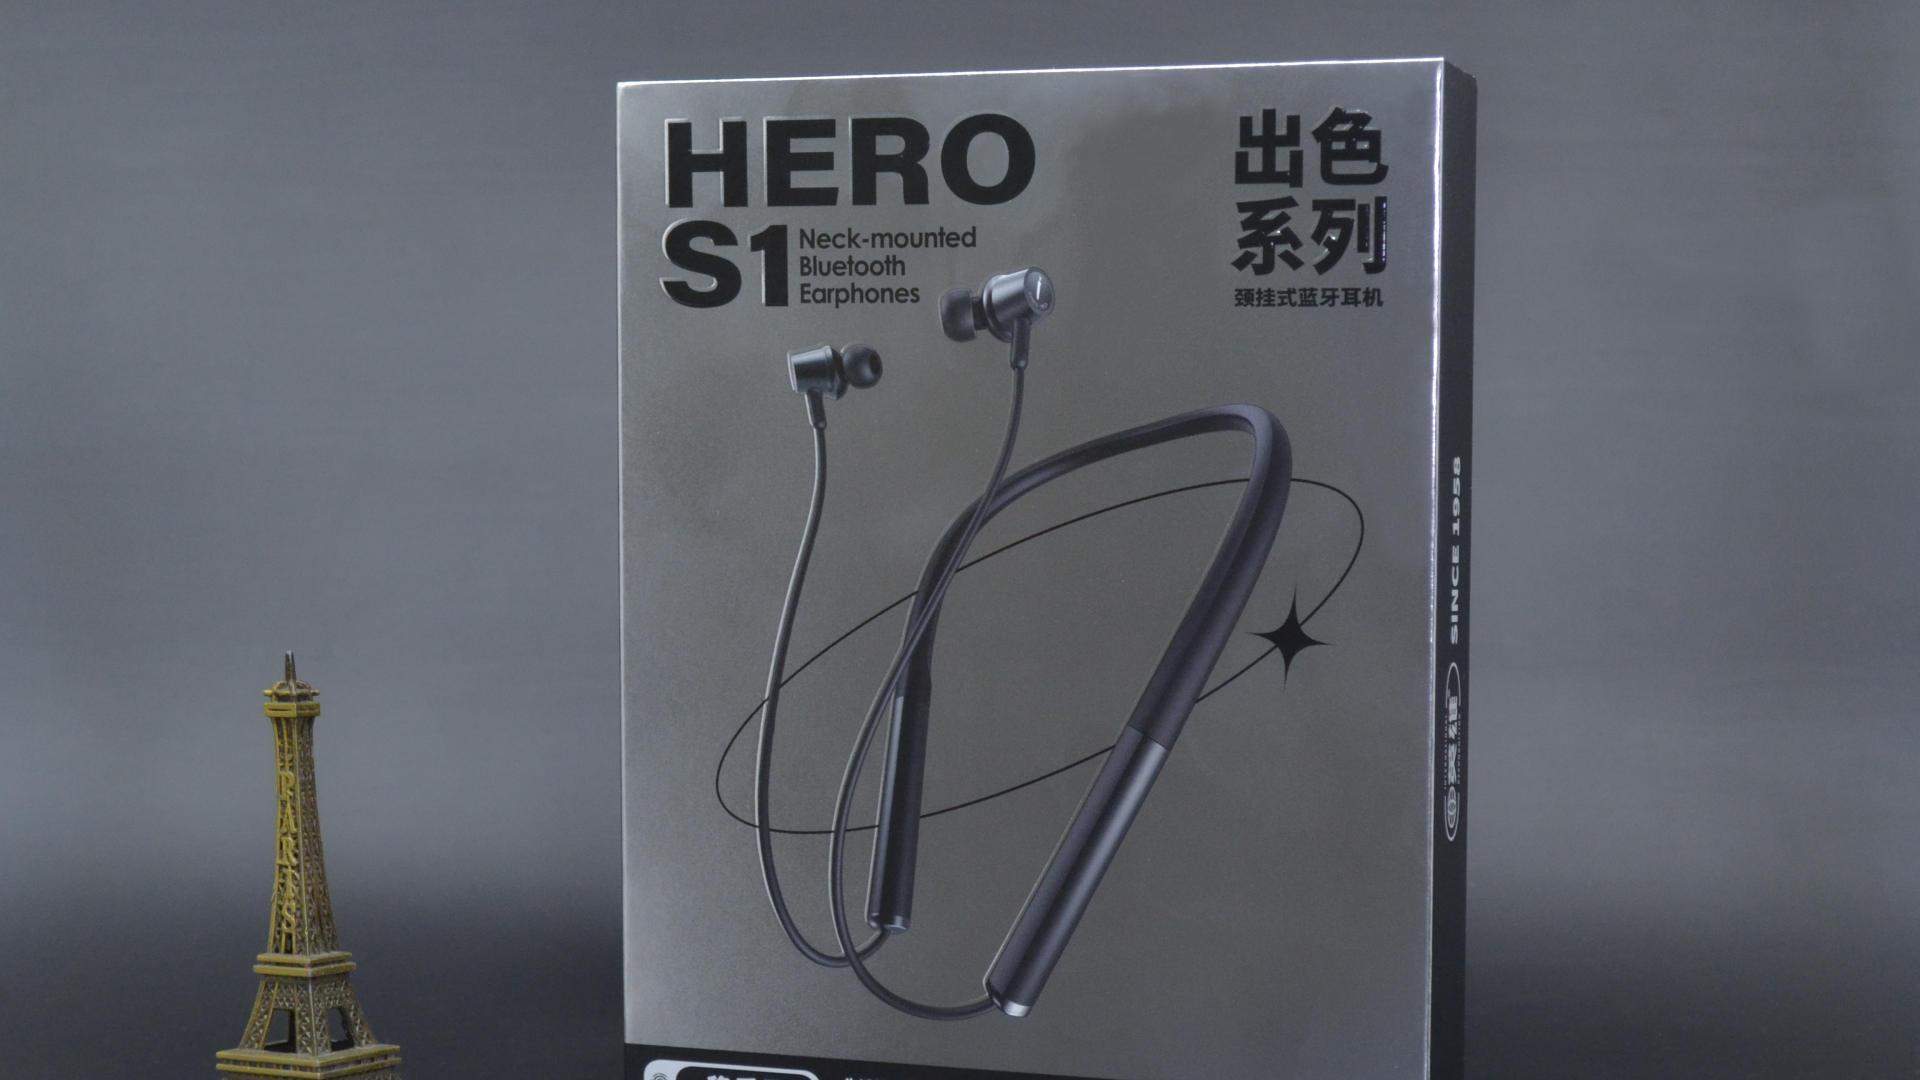 爱运动的你 别错过这款英雄HERO S1挂颈式蓝牙耳机